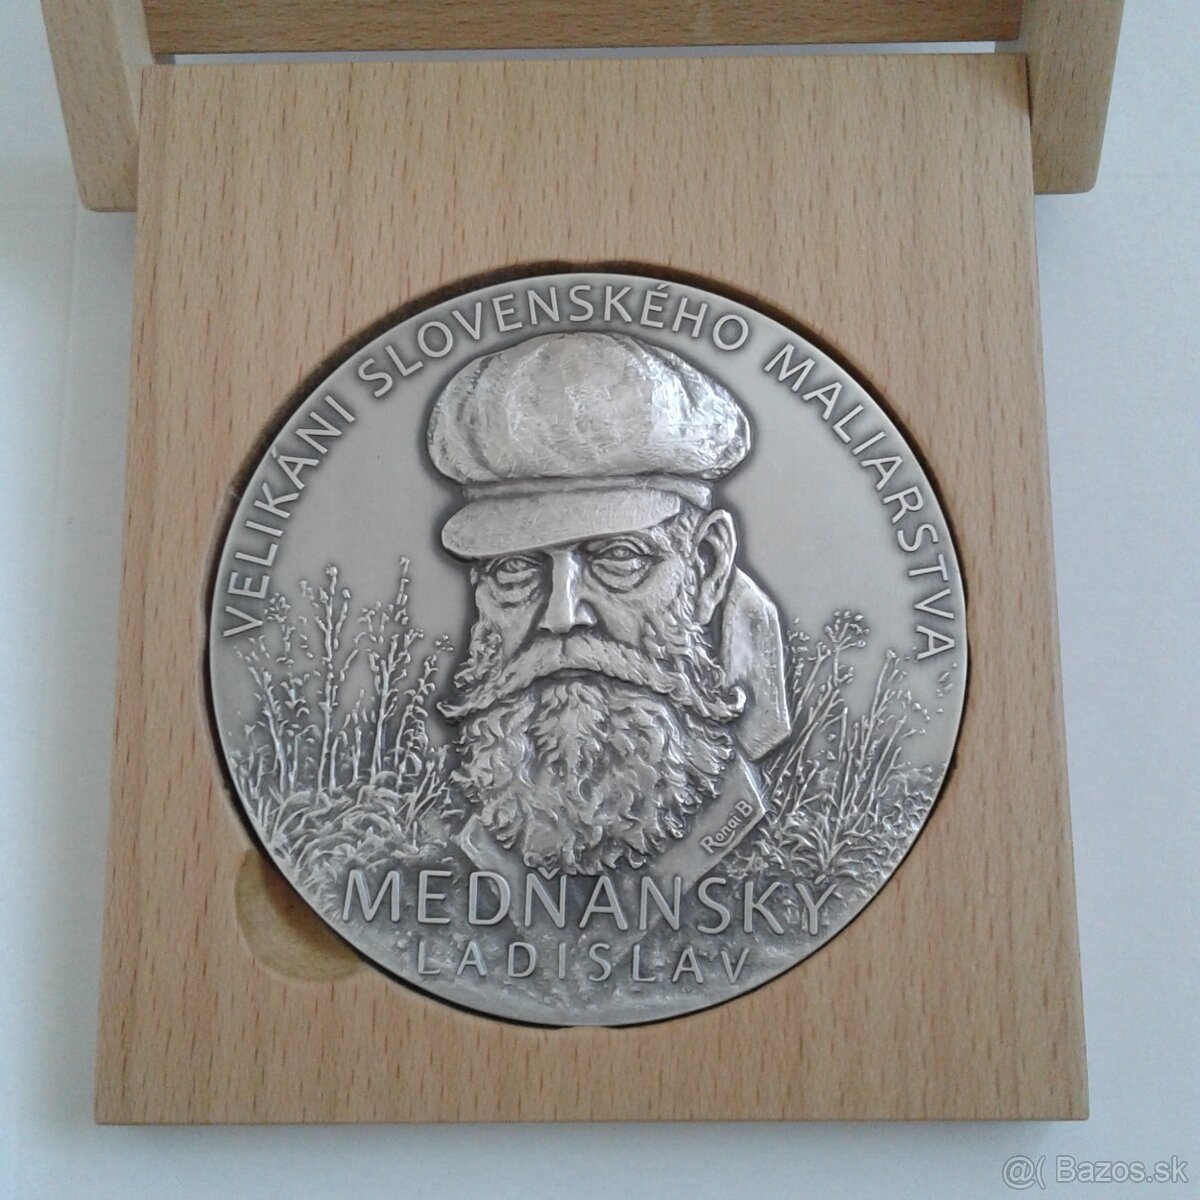 Strieborná medaila Ladislav Mednansky 330g